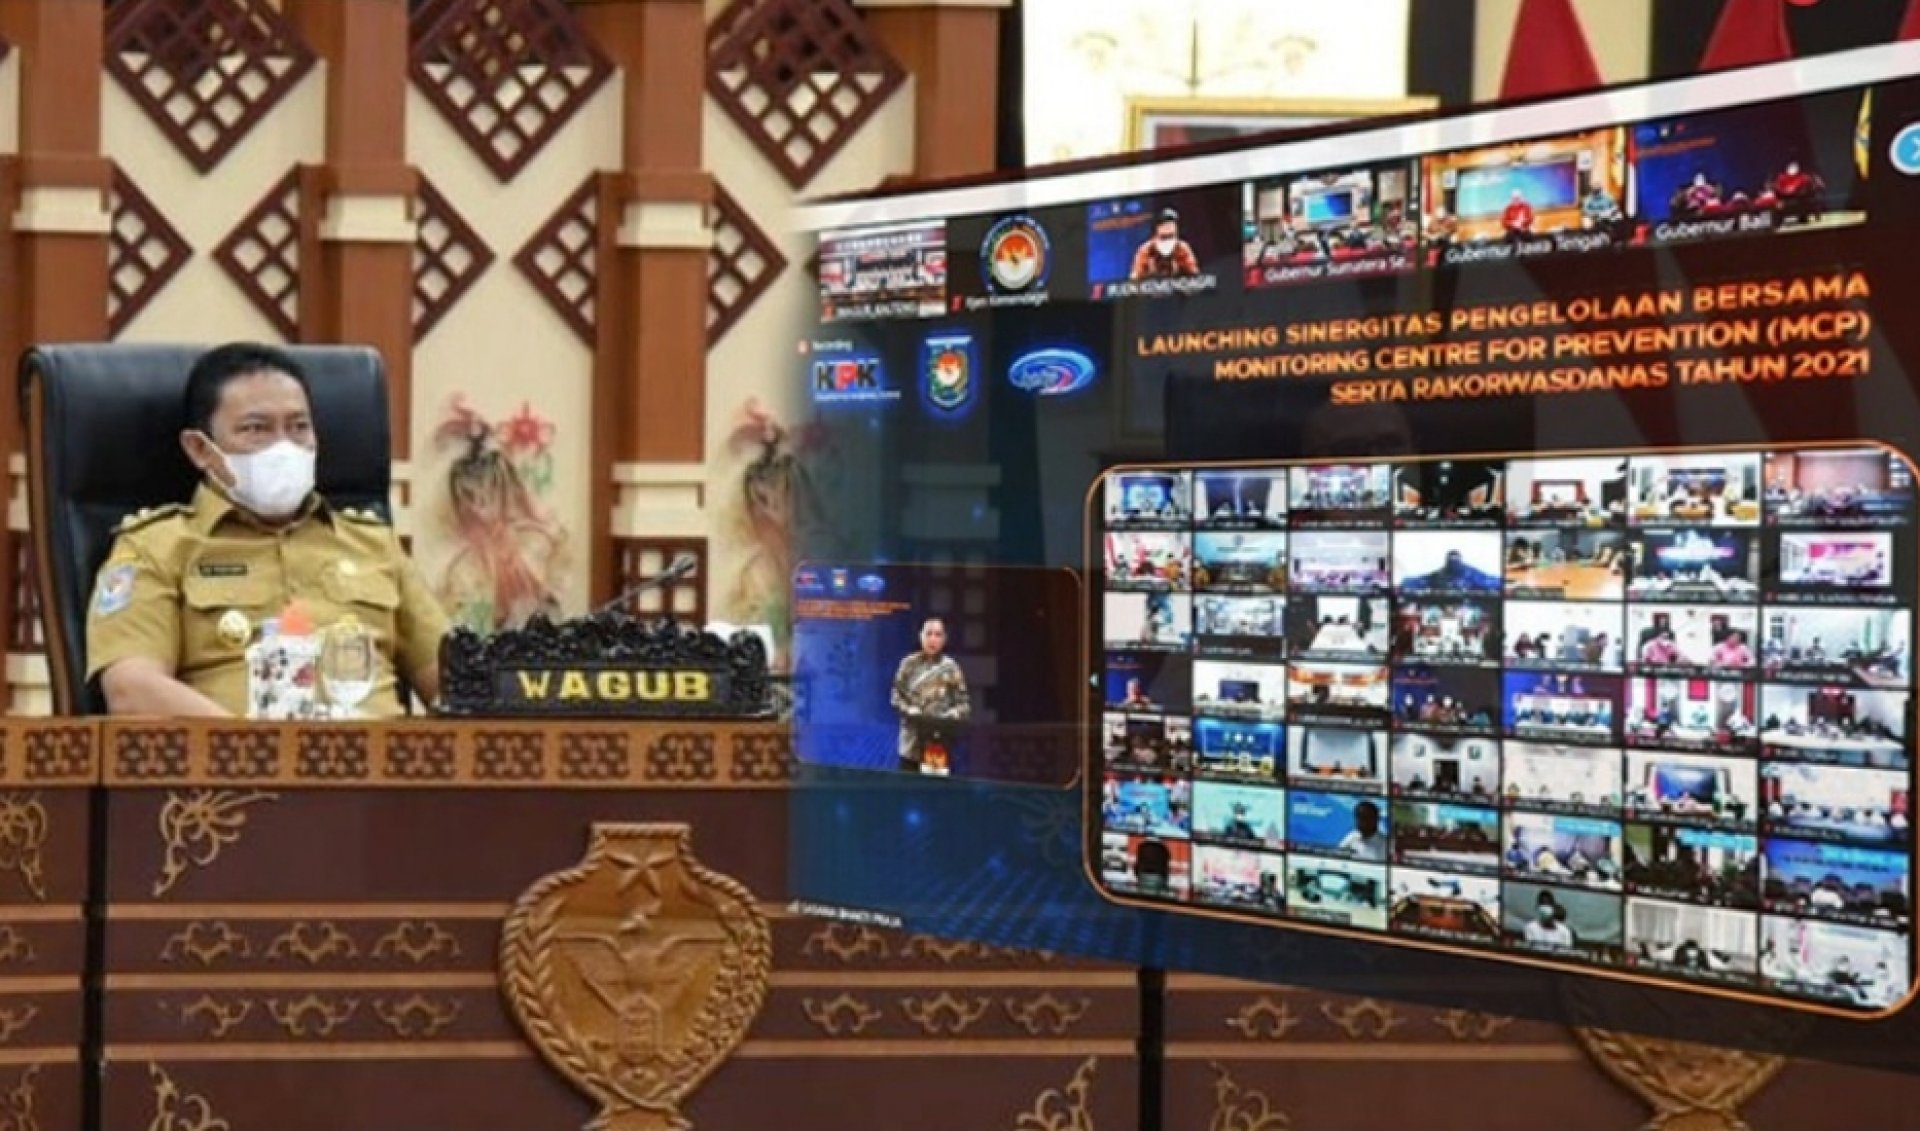 Wagub Kalteng Ikuti Rakorwasdanas dan Peluncuran Pengelolaan Bersama Monitoring Centre Prevention